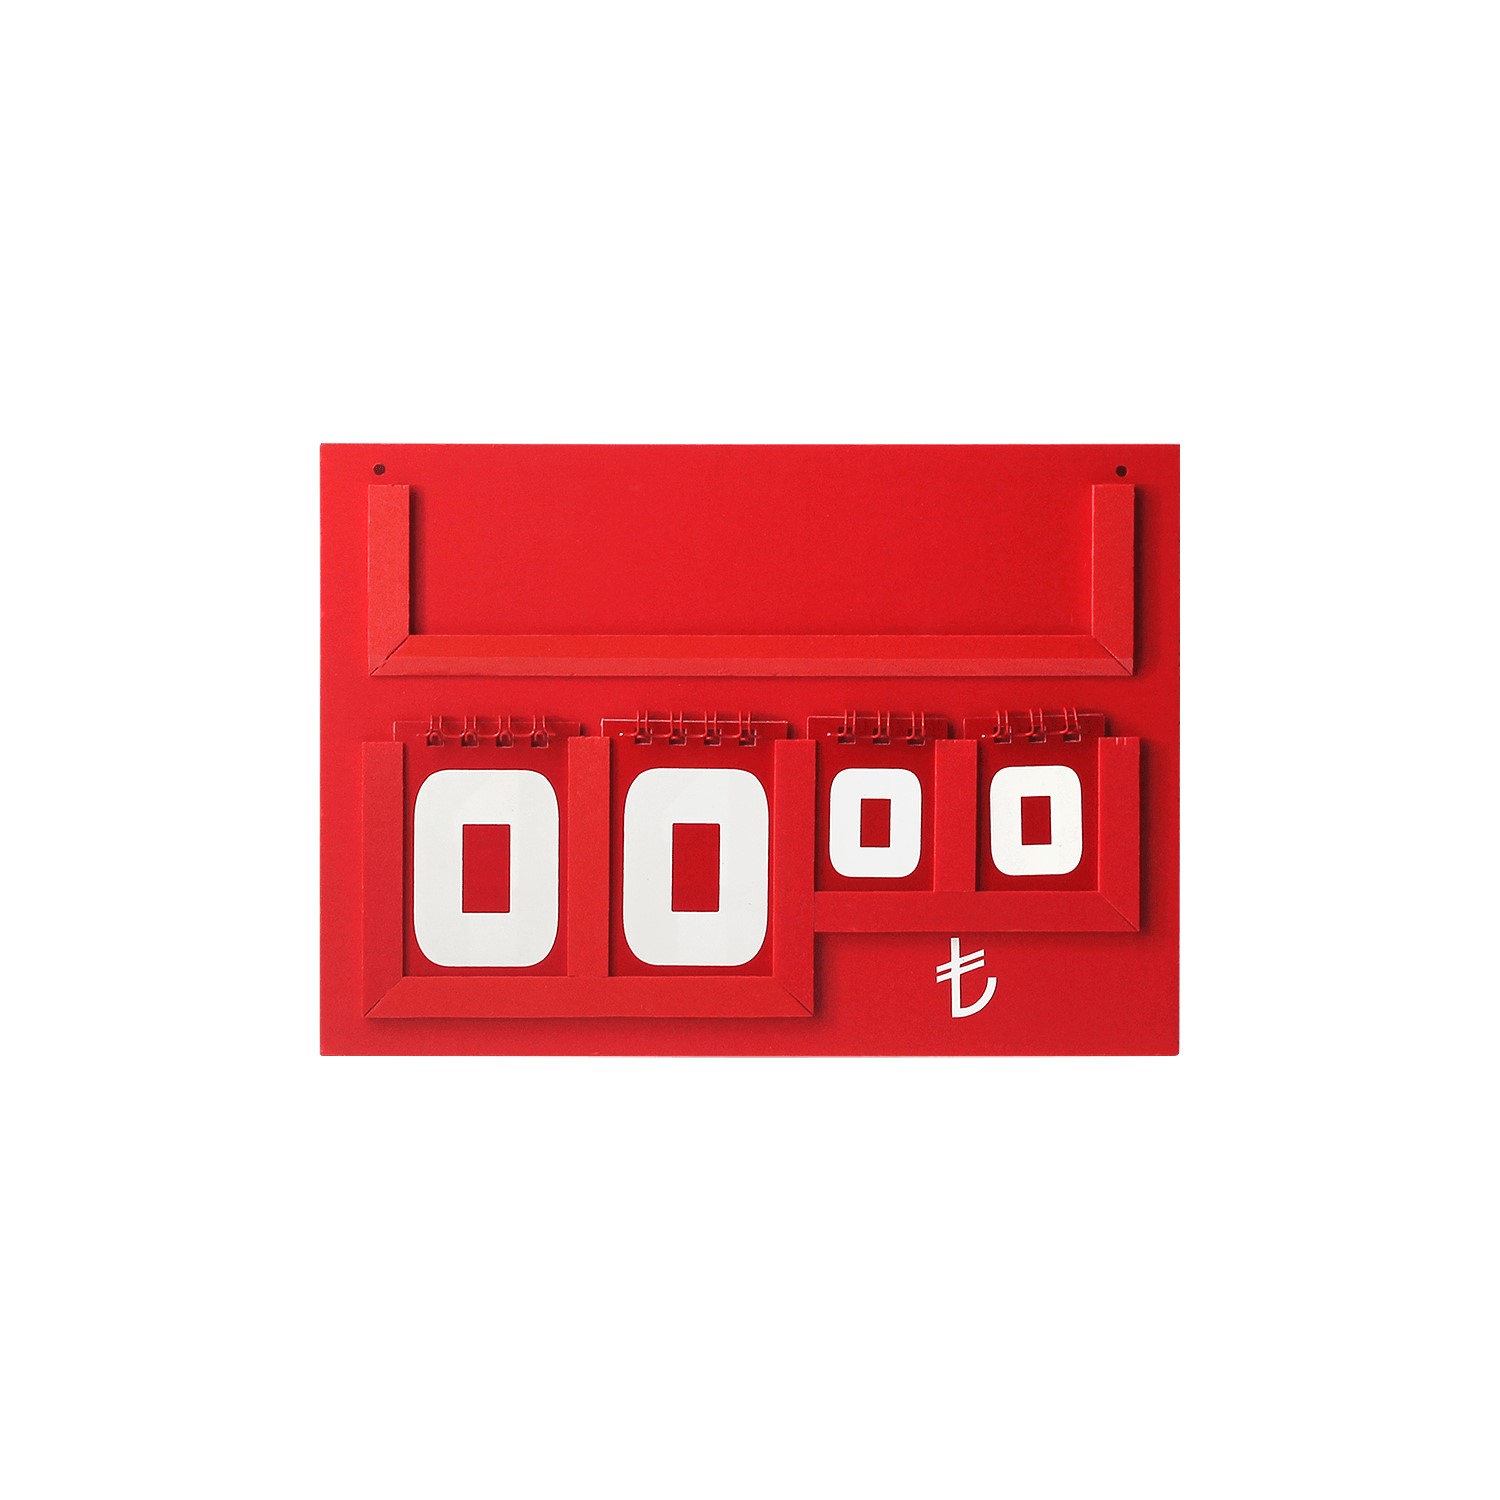 Yazılı Manav Etiketi Maxi Çift Taraflı 15x21 cm Kırmızı -1.jpg (132 KB)